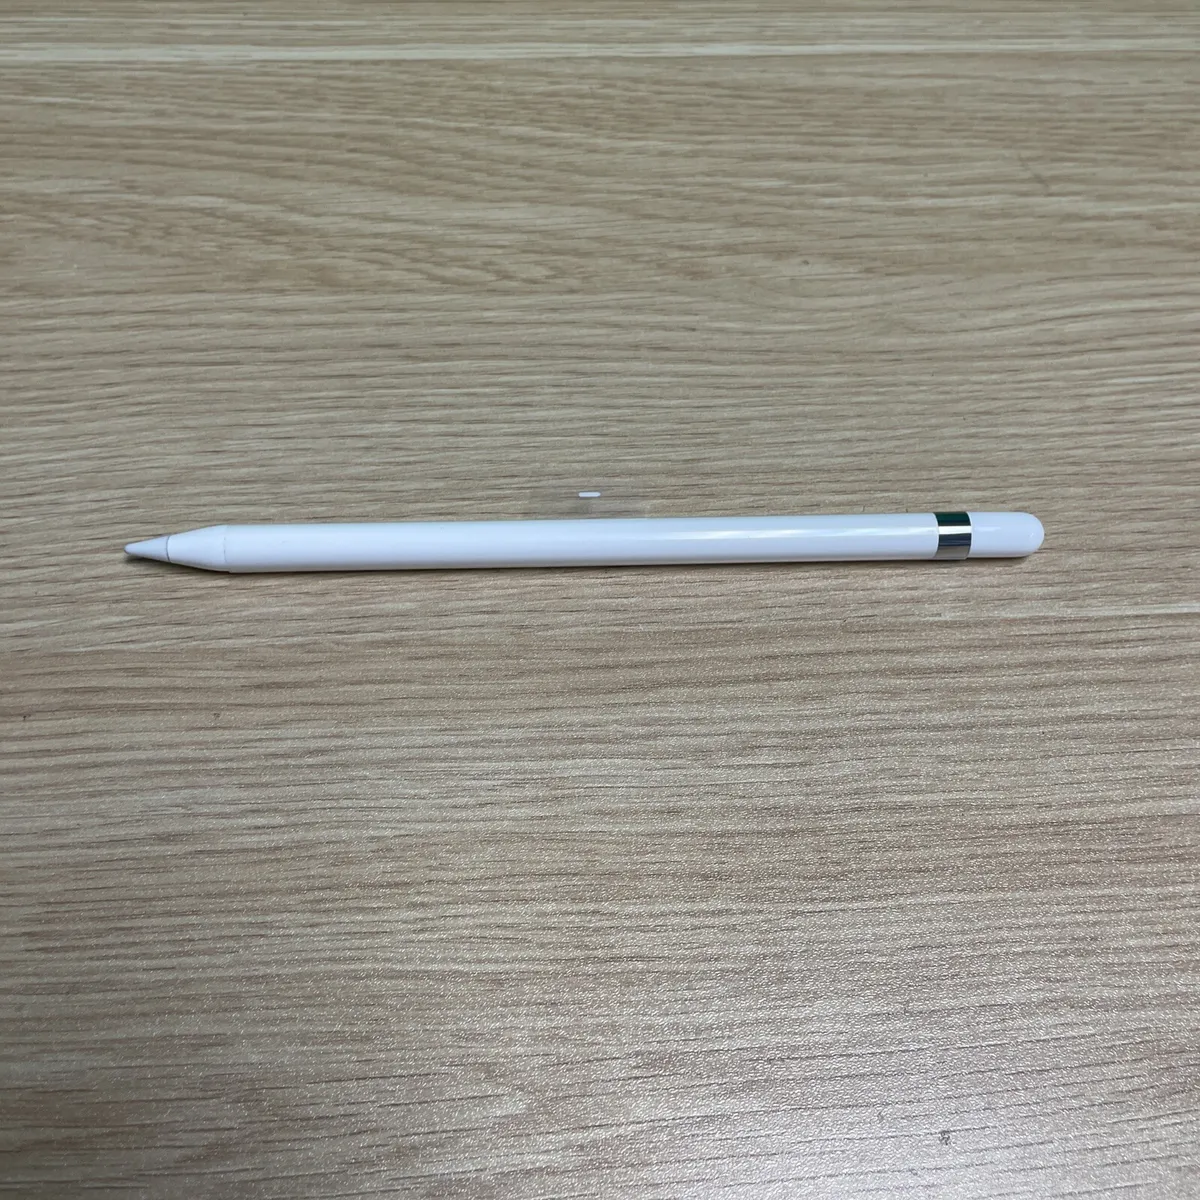 New Apple Pencil 1st Generation Model A1603 for iPad Pro & iPad, MK0C2AM/A